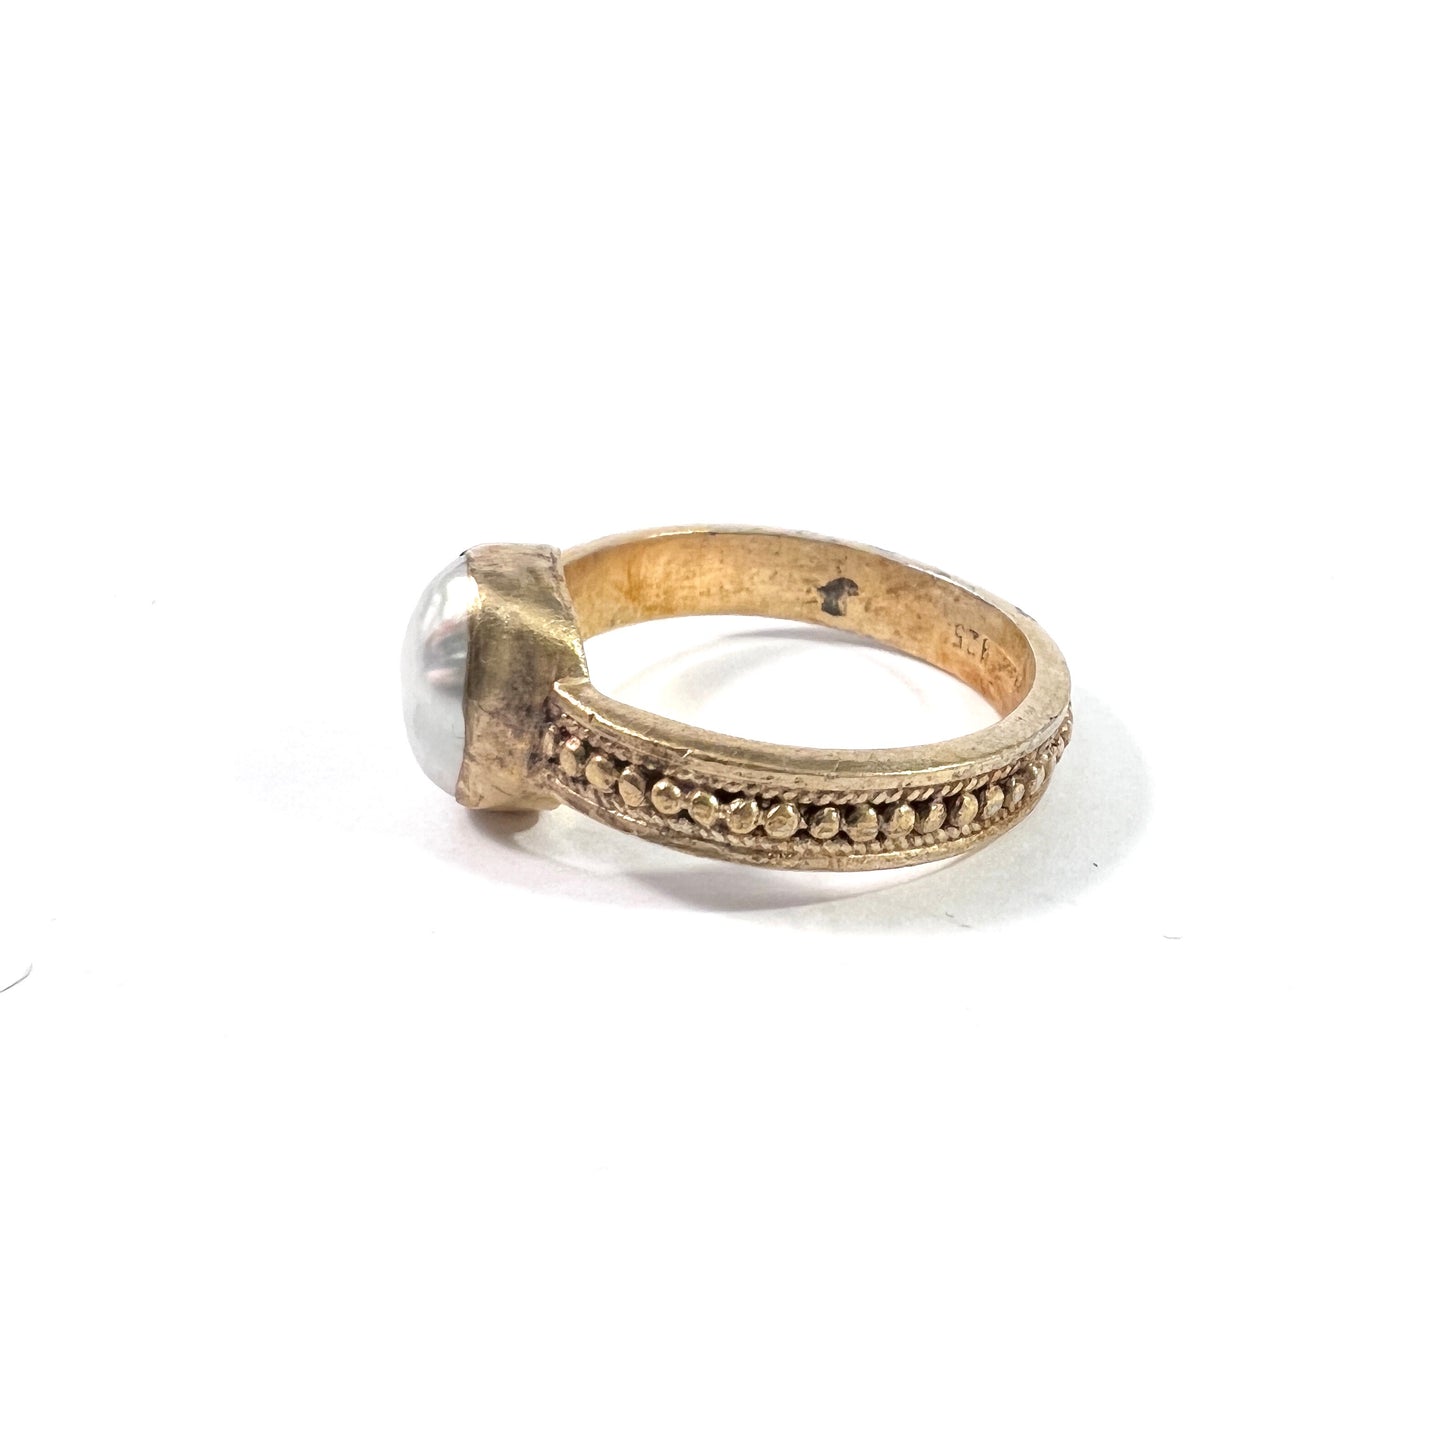 Vintage Gilt Sterling Silver Cultured Pearl Medieval Copy Ring. Maker's Mark